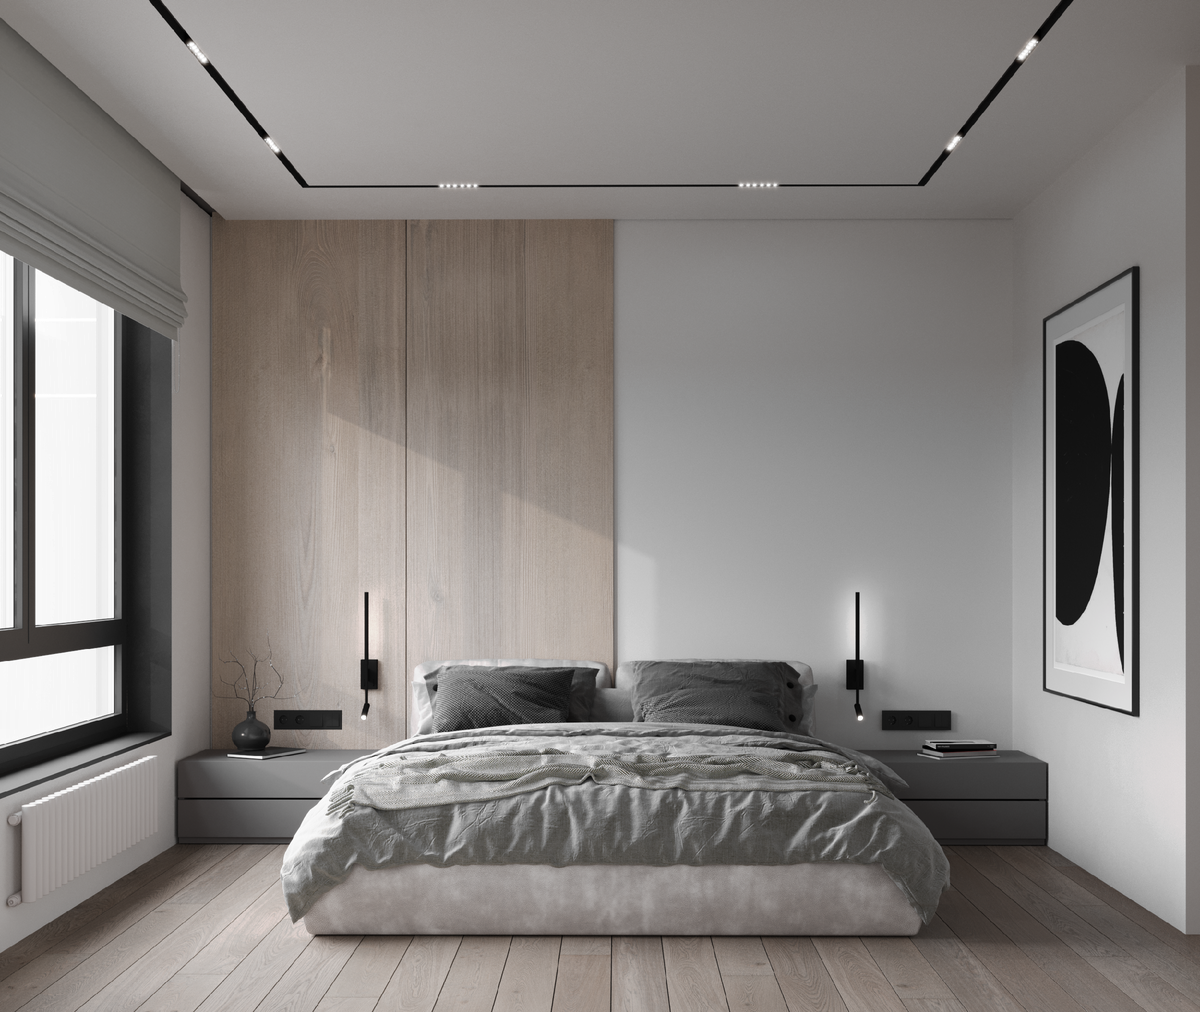 В этой статье мы, дизайнеры из студии I’m Design Studio, хотим рассказать о последних тенденциях в оформлении интерьеров и дать практические советы по выбору мебели, освещения и аксессуаров для...-4